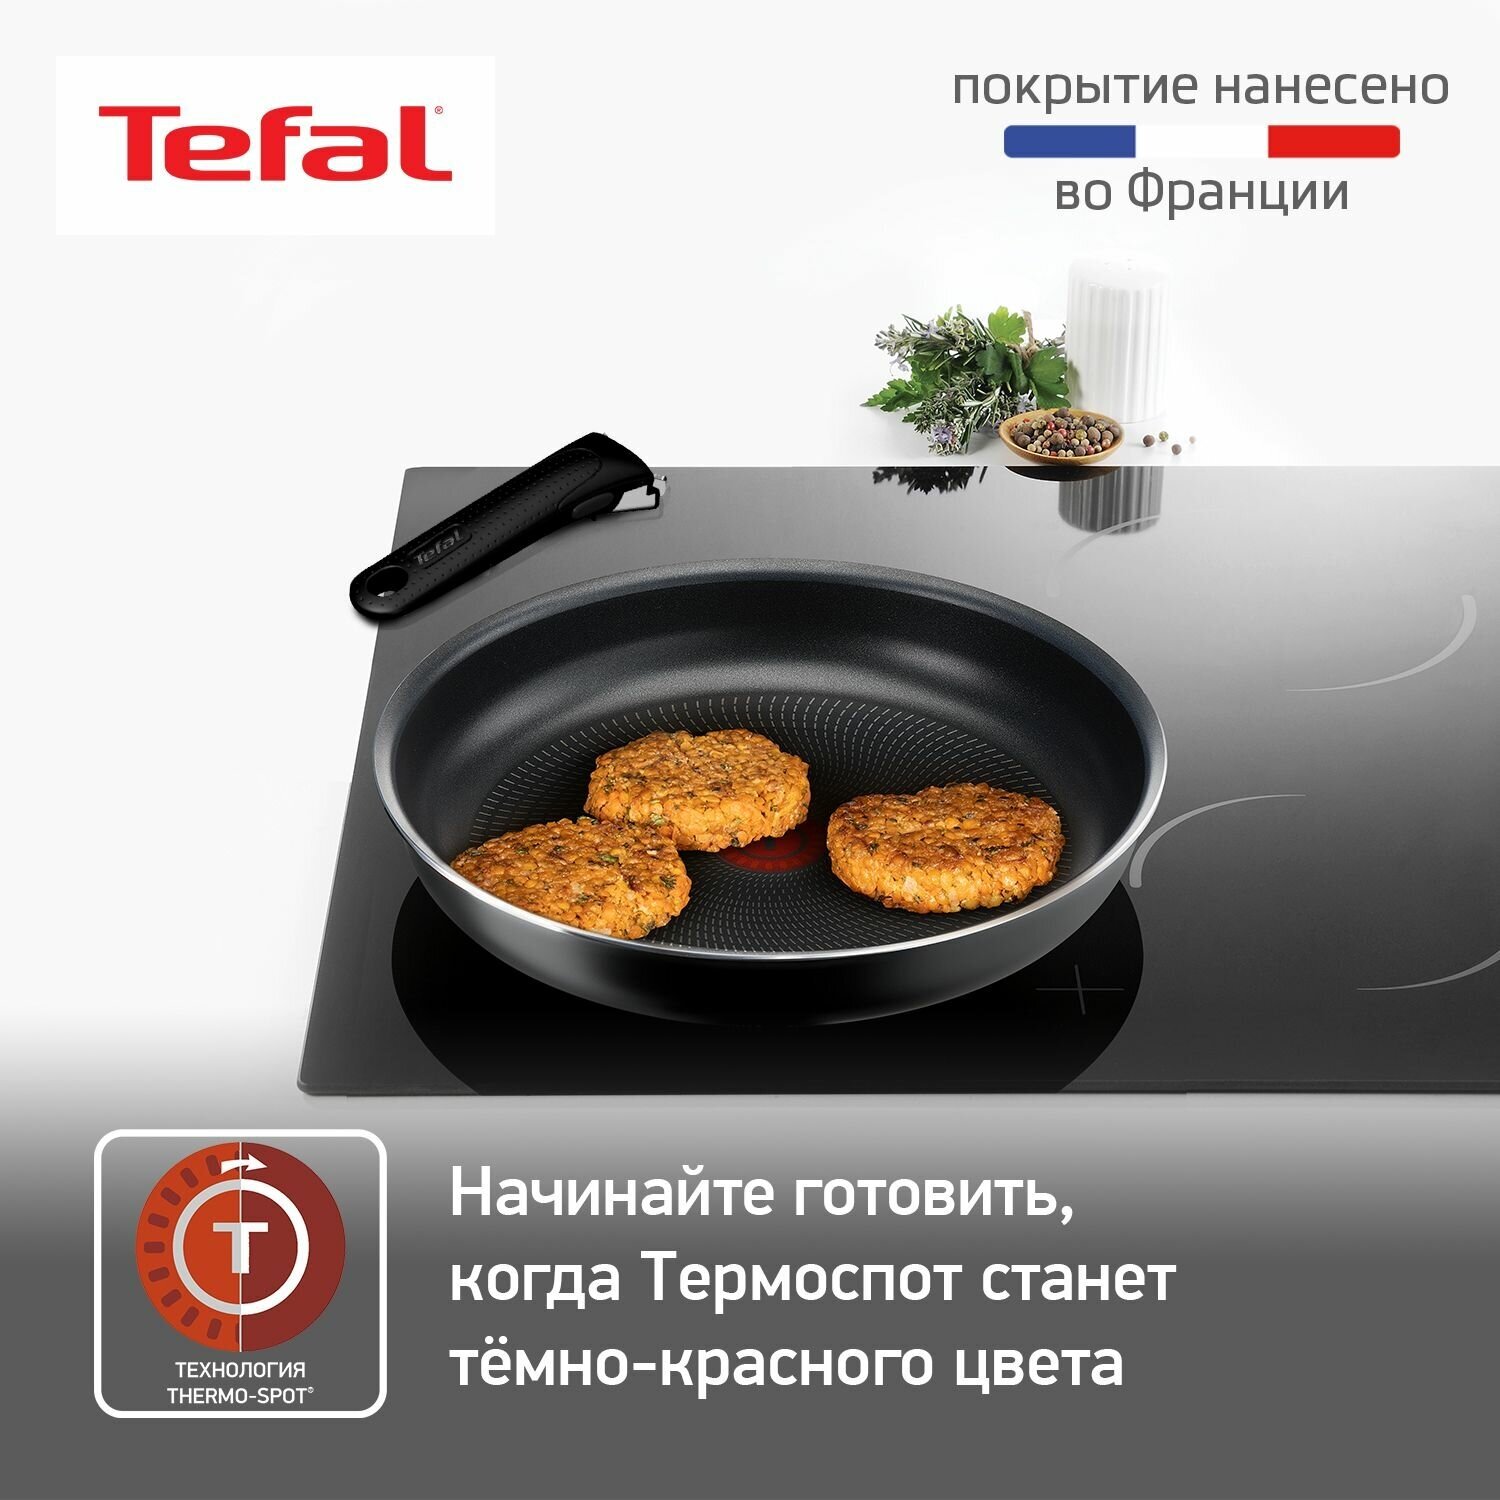 Набор сковород Tefal Ingenio BLACK 5, 3 предмета 22/26см 04238830